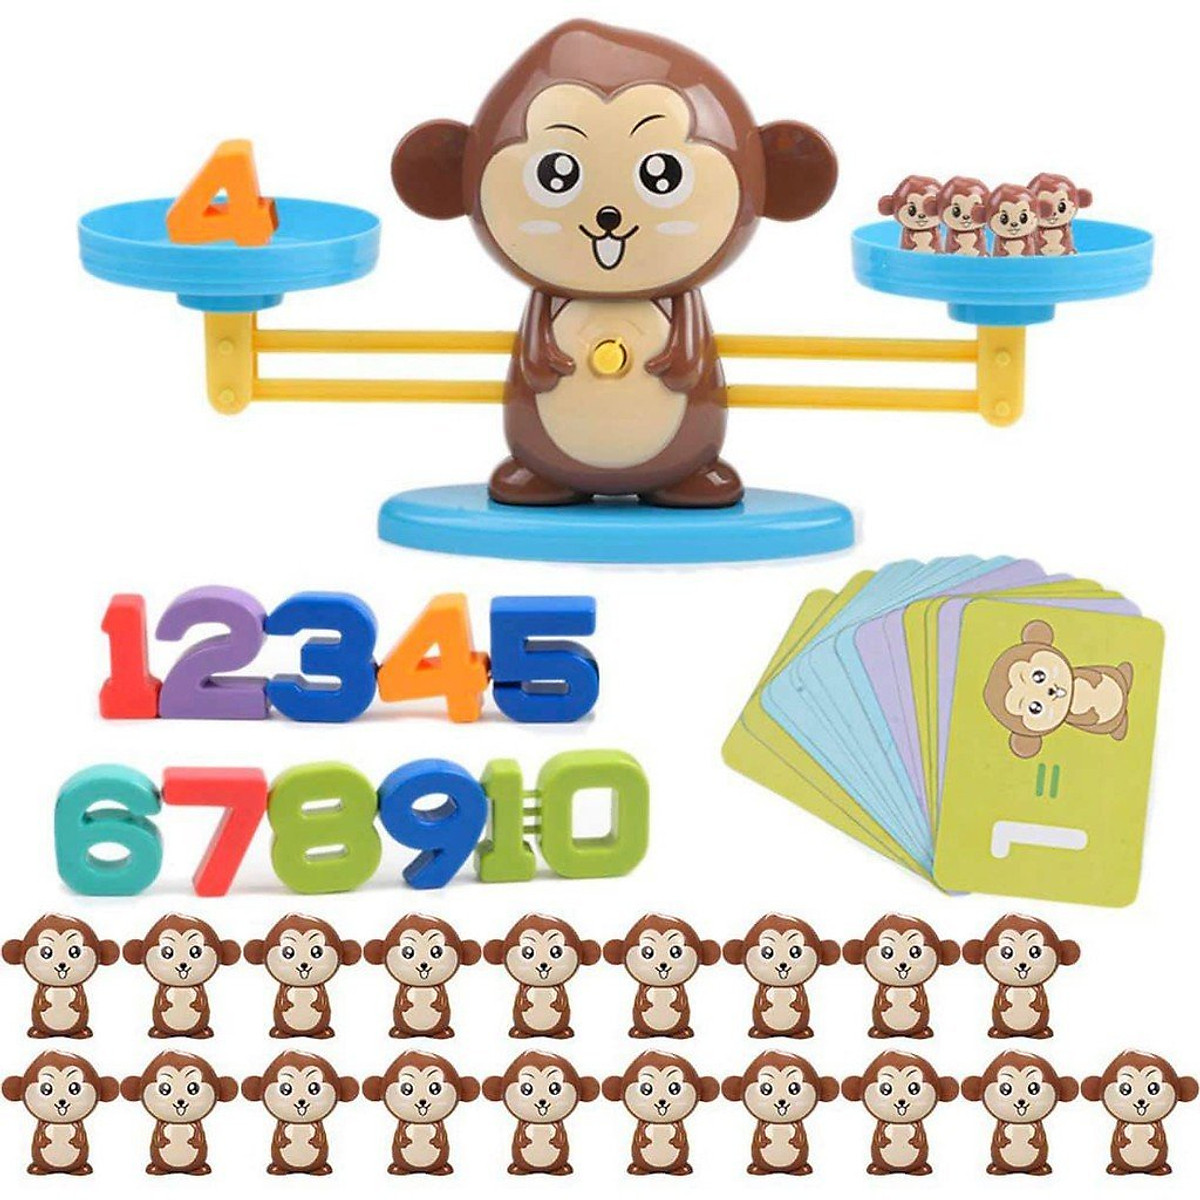 Đồ Chơi Montessori- Đồ Chơi Giáo Dục Thông Minh- Ếch/ Khỉ Cân Bằng ...